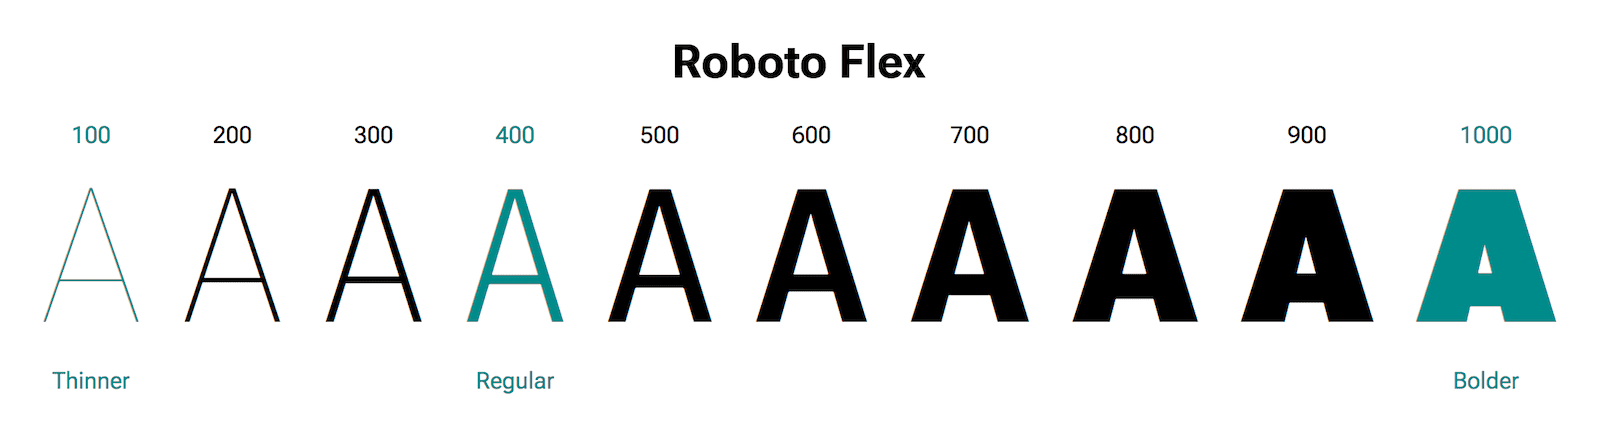 Litera „A” ma różne wagi.